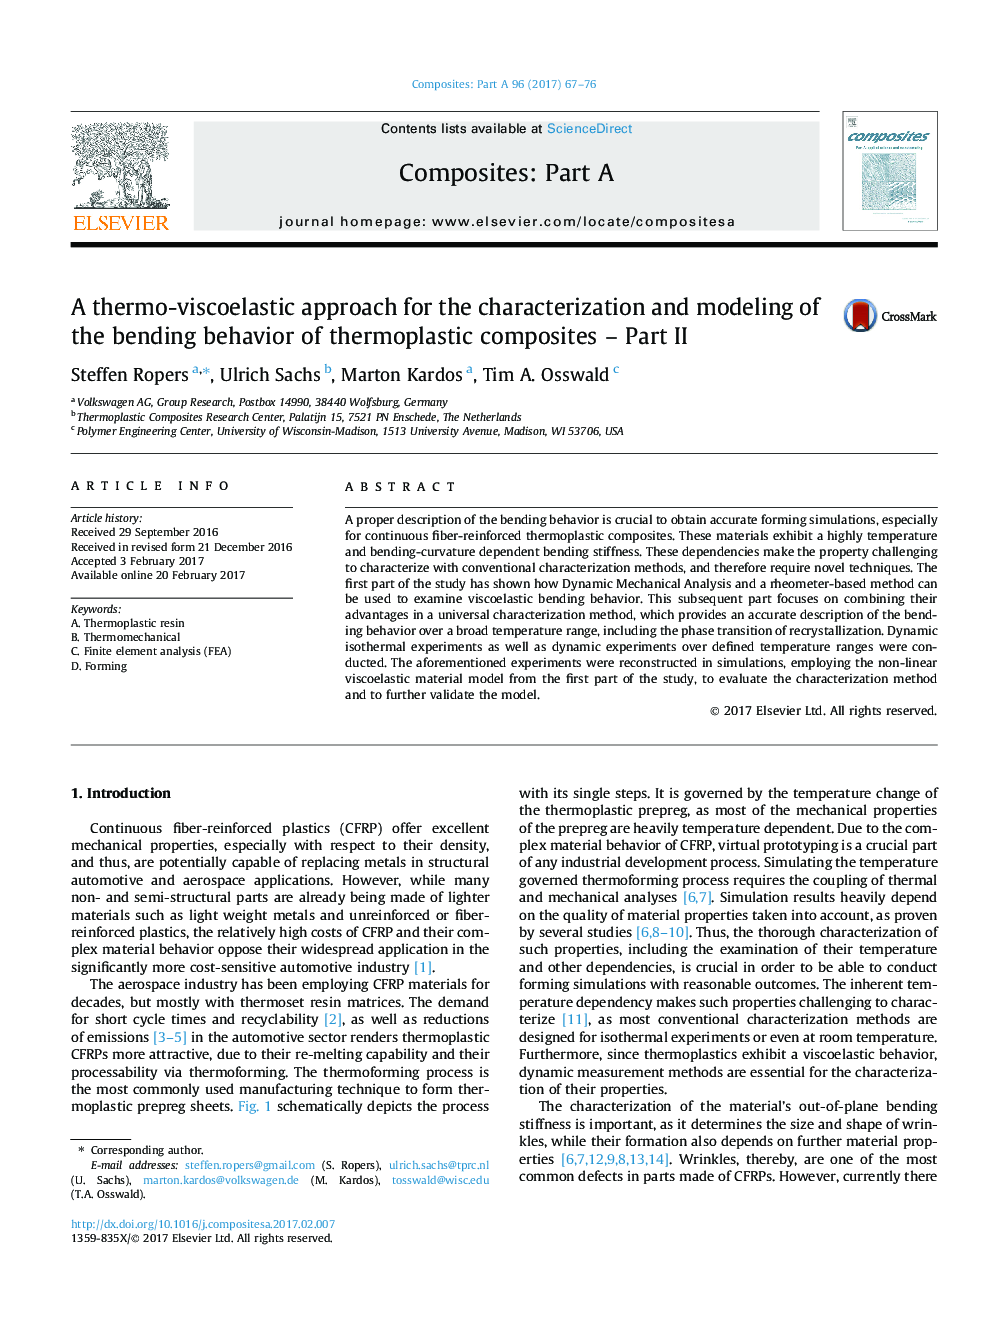 رویکرد گرماسوزوالاستیک برای توصیف و مدل سازی رفتار خمشی کامپوزیتهای گرمانرم - قسمت دوم 